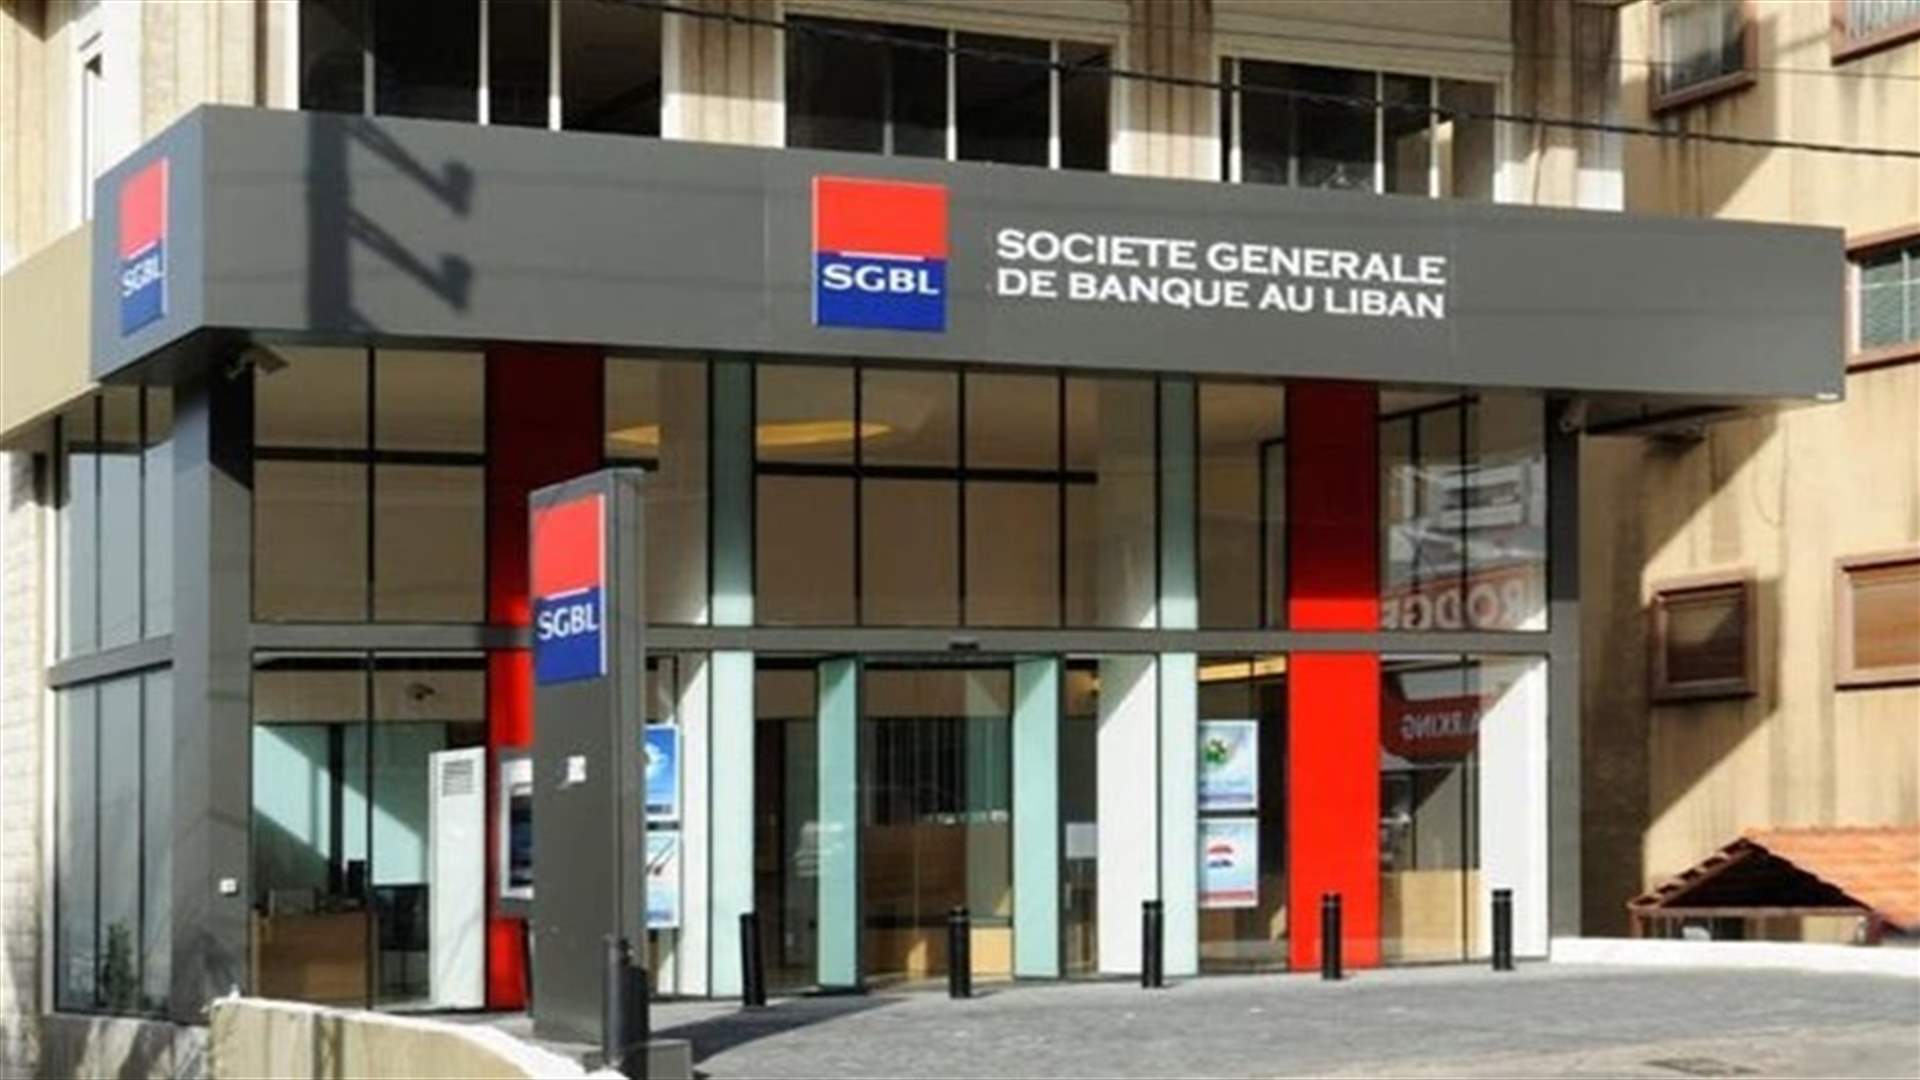 الفرنسيّون ينسحبون من &quot;سوسيتيه جنرال&quot;... مصادر مصرفية لـ&quot;الأخبار&quot;: الخطوة الفرنسية ستضعف الثقة بالمصرف اللبناني